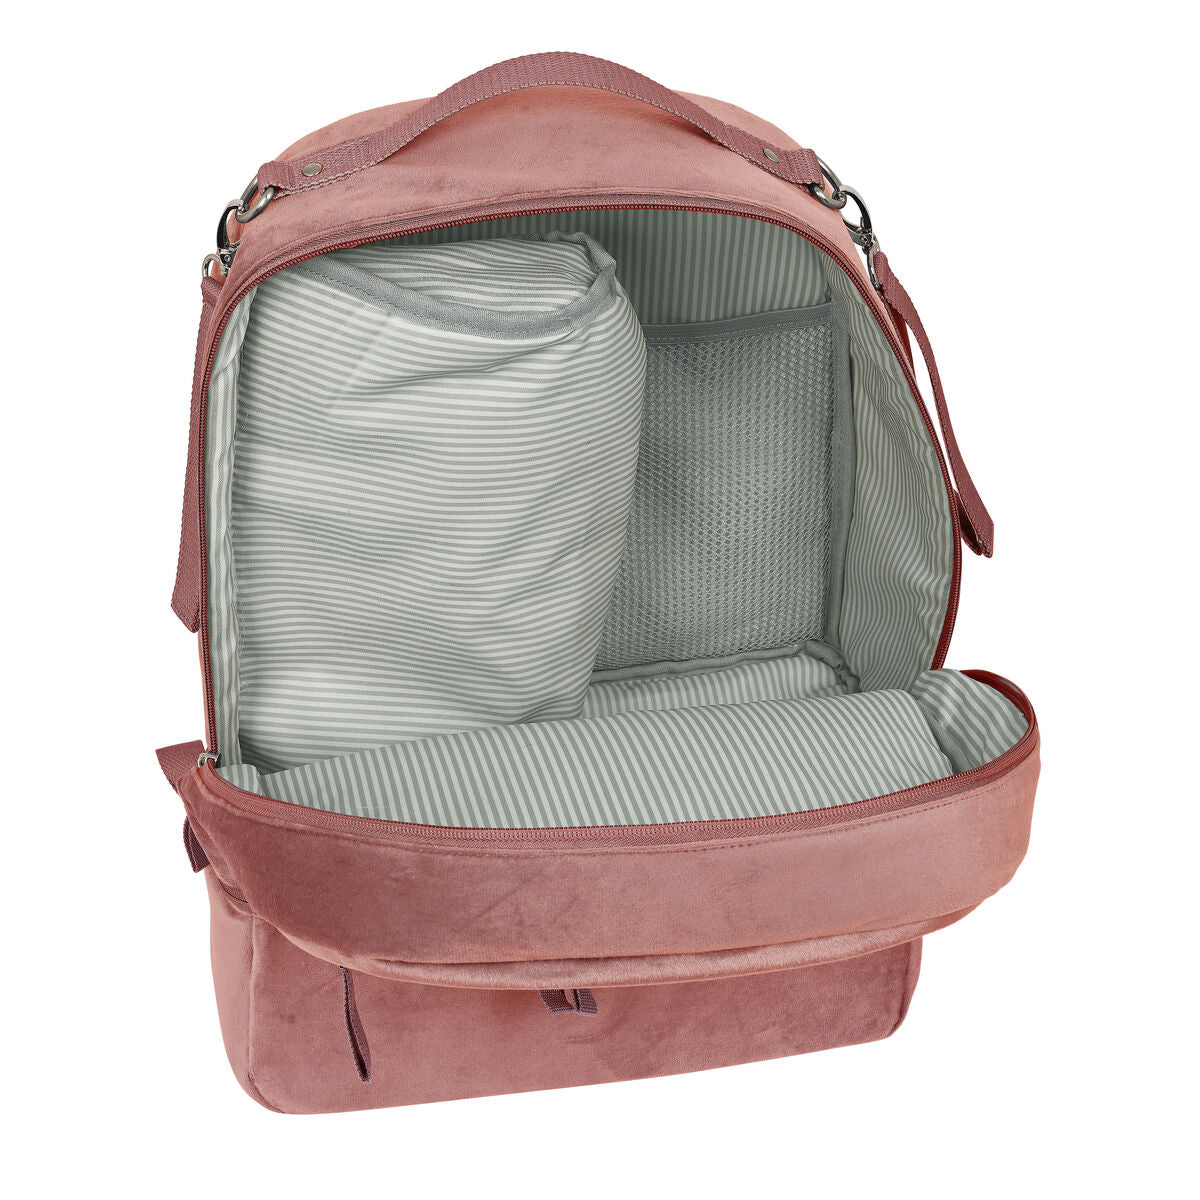 Baby-Accessoires-Tasche Safta Marsala Pink (30 x 43 x 15 cm)